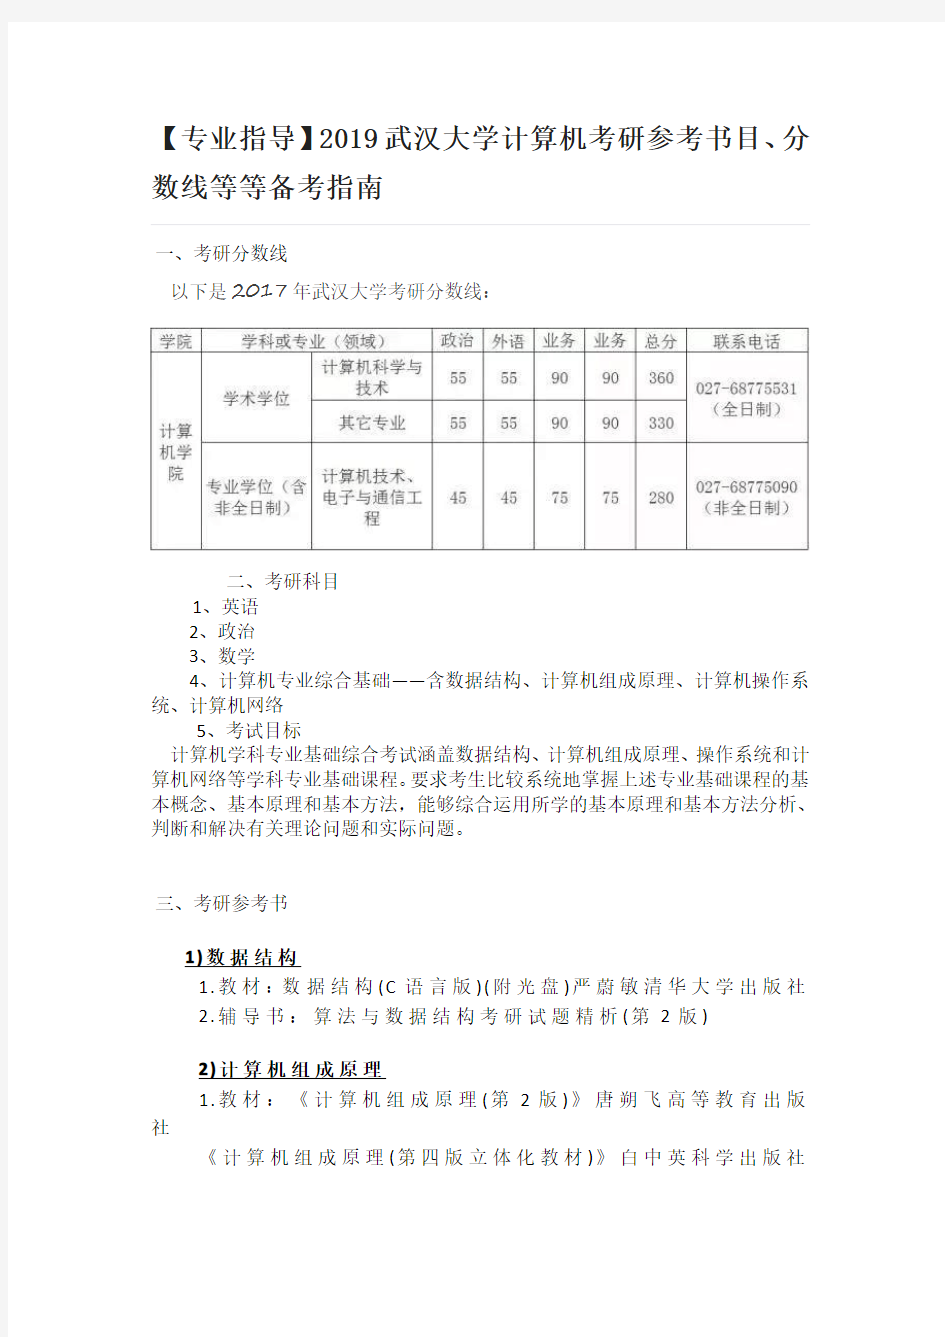 【专业指导】2019武汉大学计算机考研参考书目、分数线等等备考指南